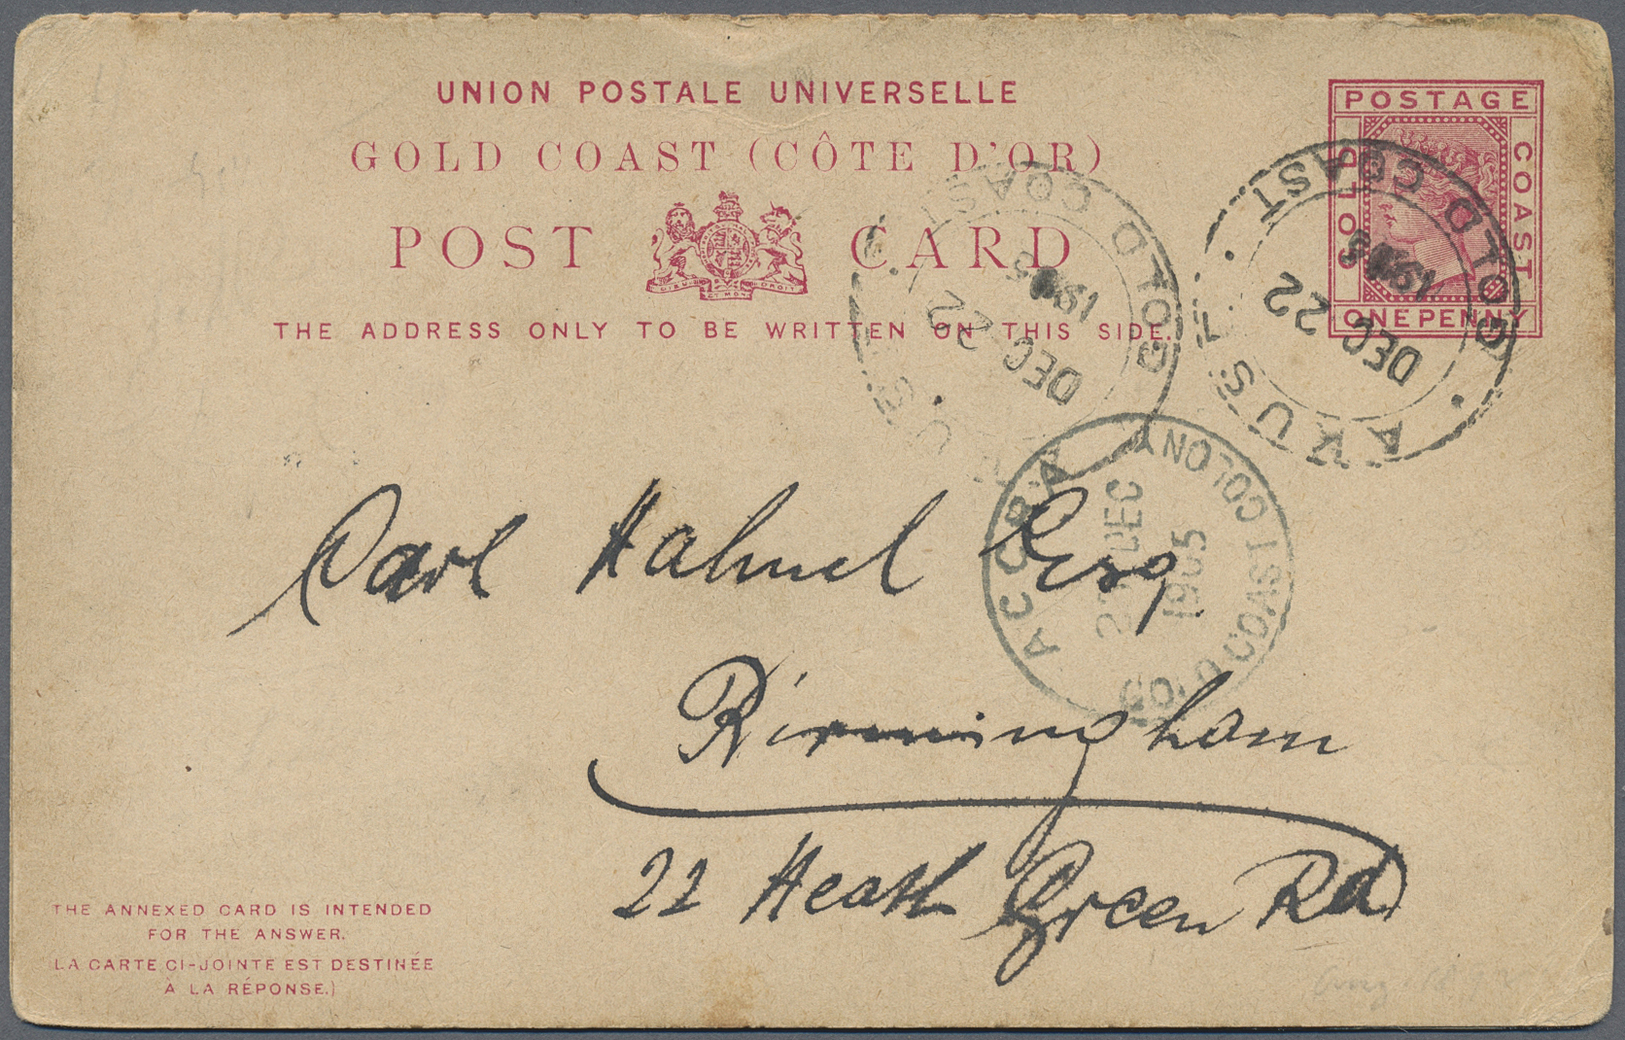 Br Goldküste: 1894/1952: 36 interesting envelopes, picture postcards and postal stationeries including